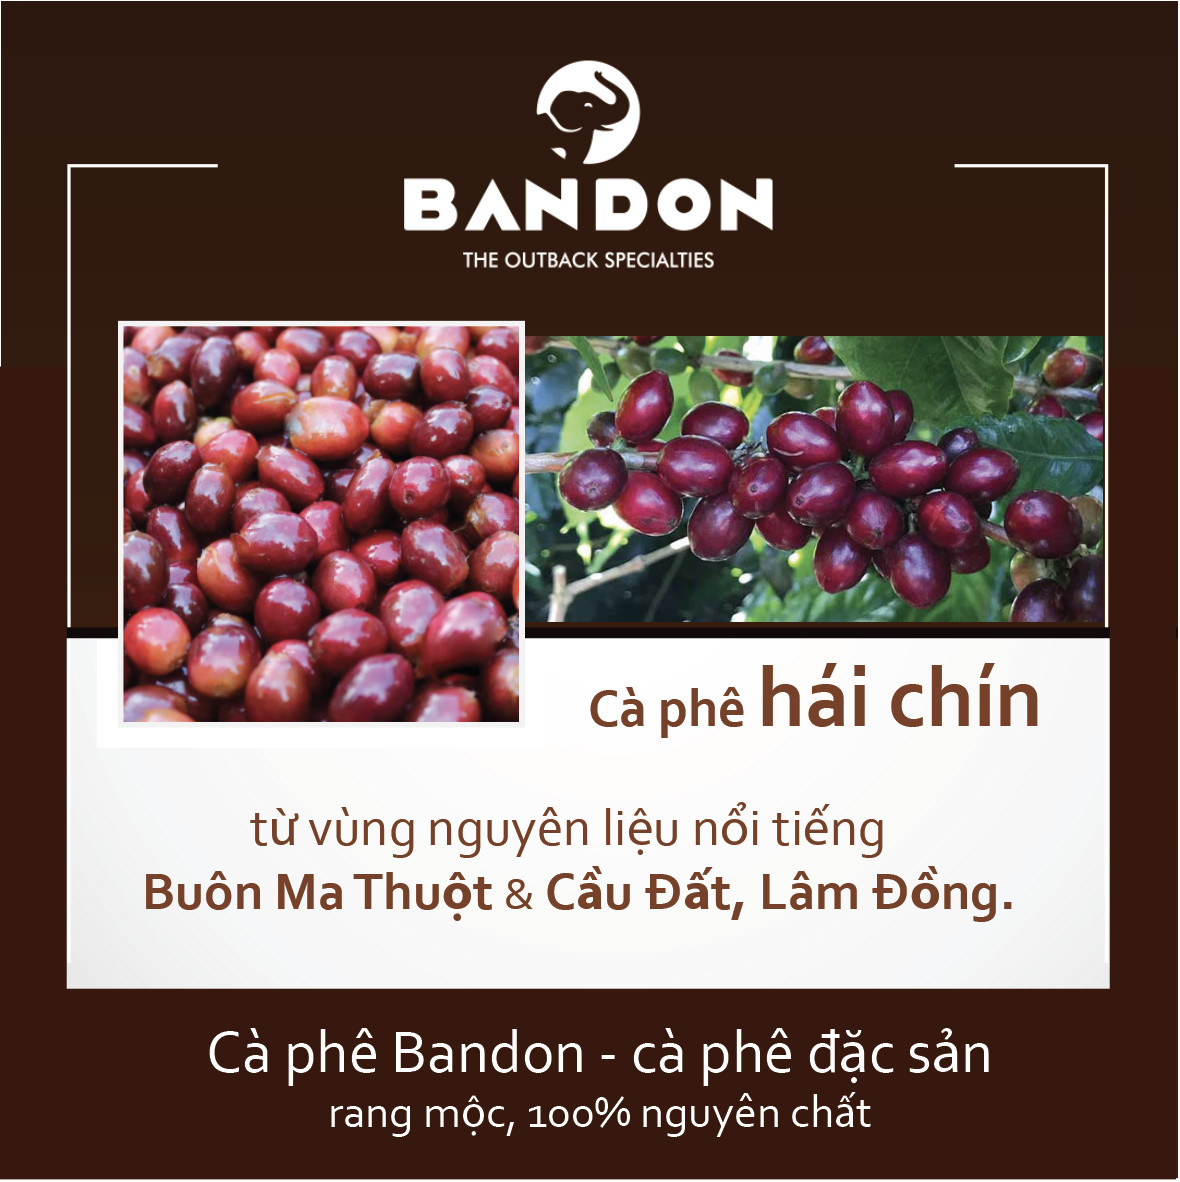 Cà phê phin nguyên chất rang xay mộc sạch BANDON FOCUS 450g đắng đậm, thơm nồng - Cà phê đặc sản (50% Robusta Natural, 50% Robusta Buôn Ma Thuột Culi)